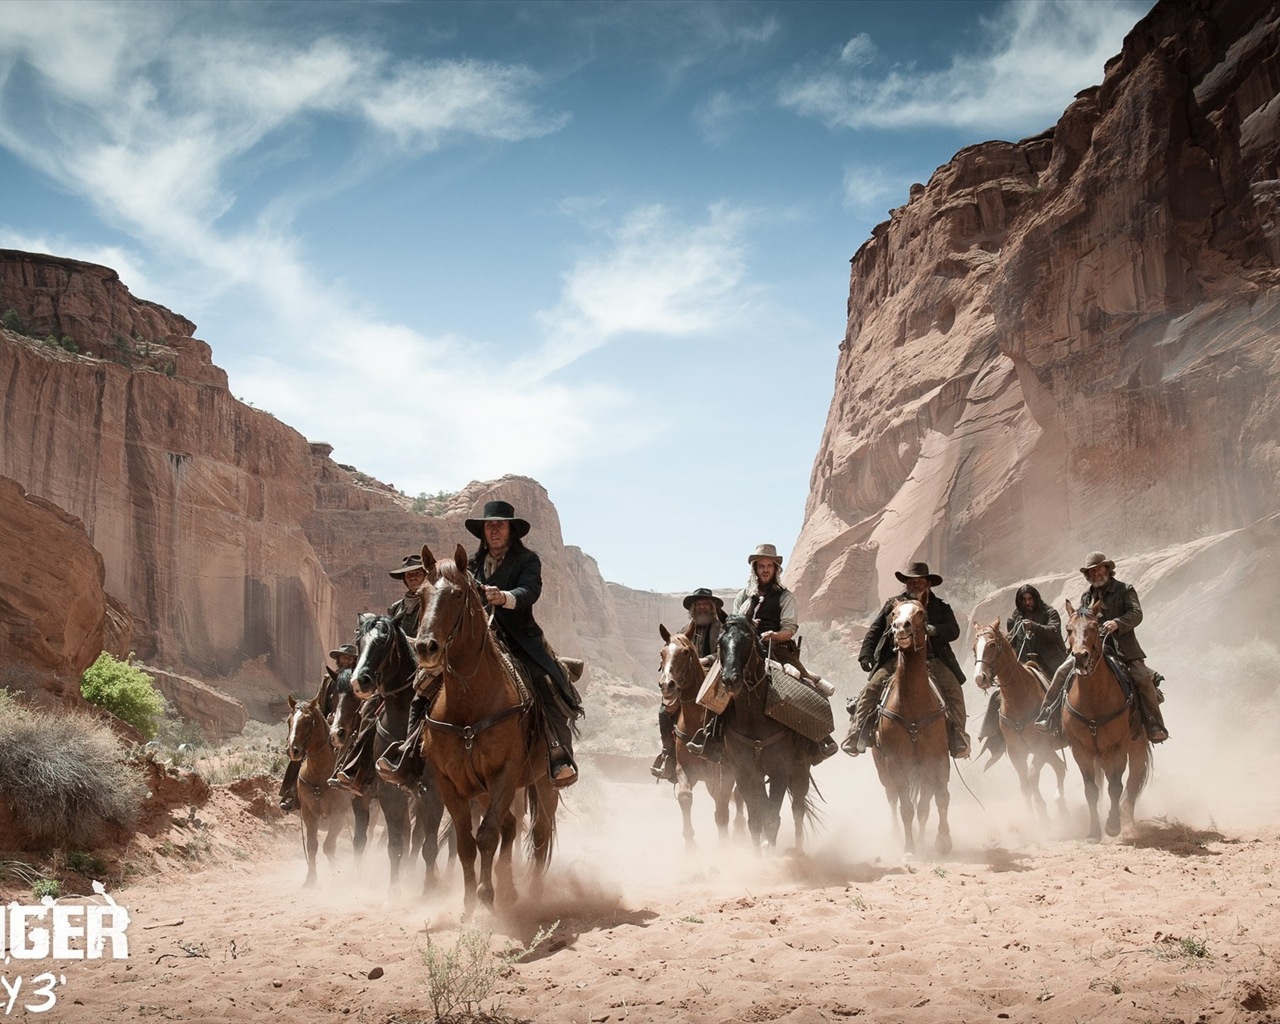 Los fondos de pantalla de cine Lone Ranger de alta definición #15 - 1280x1024